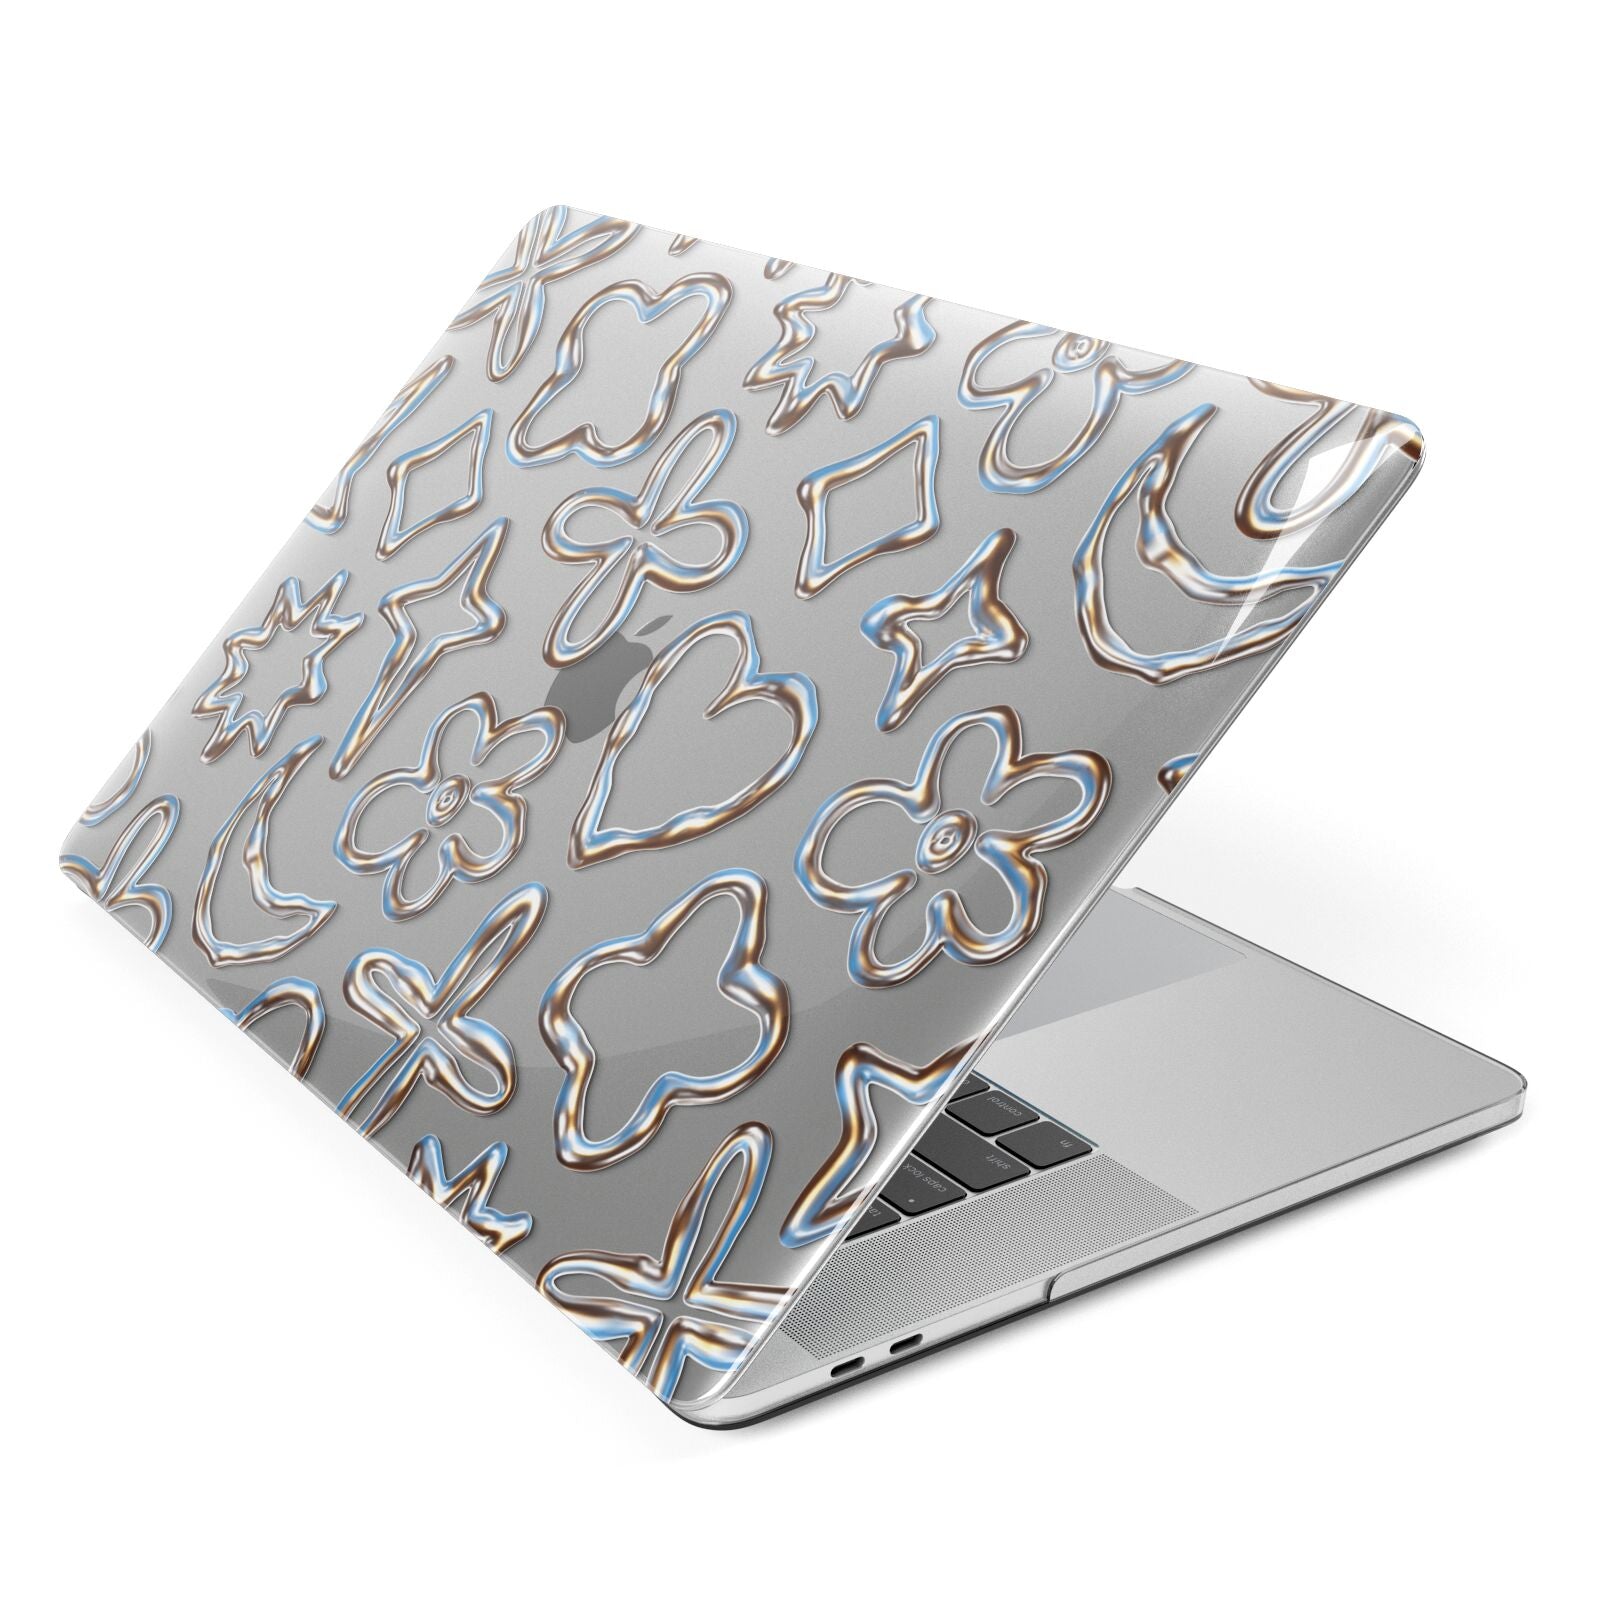 Liquid Chrome Doodles Apple MacBook Case Side View